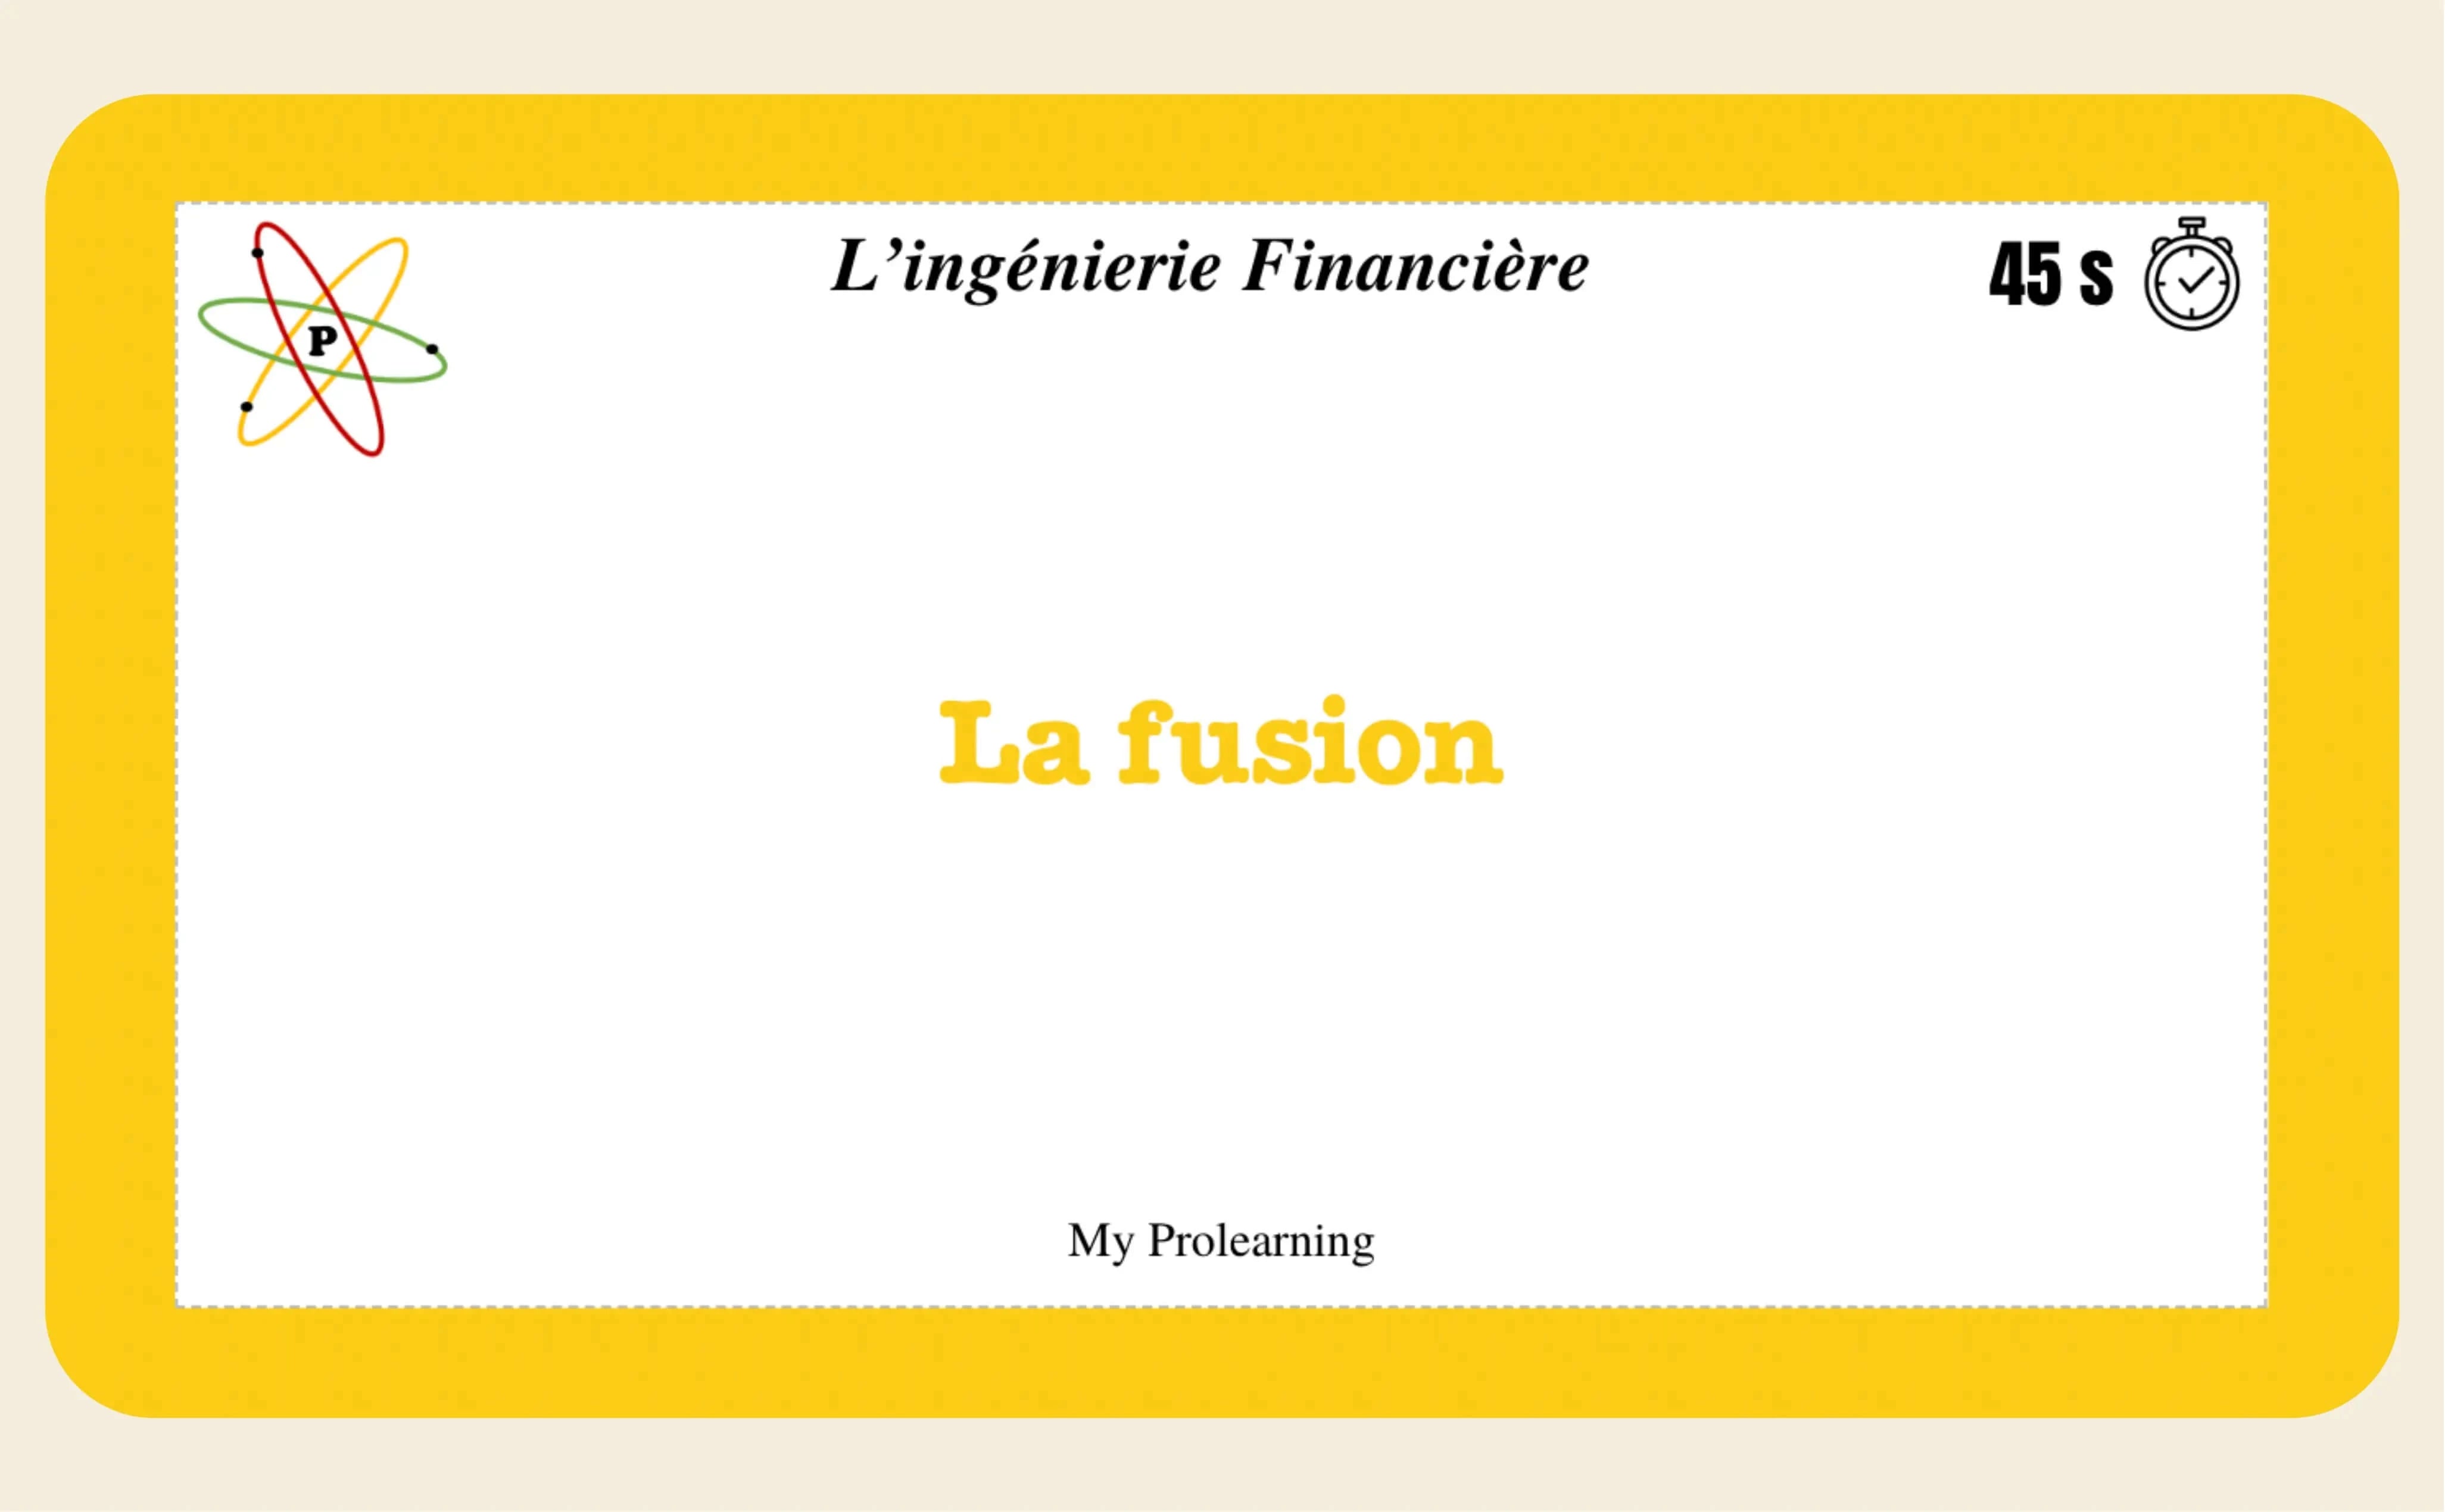 FICHES D'INGENIERIE FINANCIERE - My Prolearning 